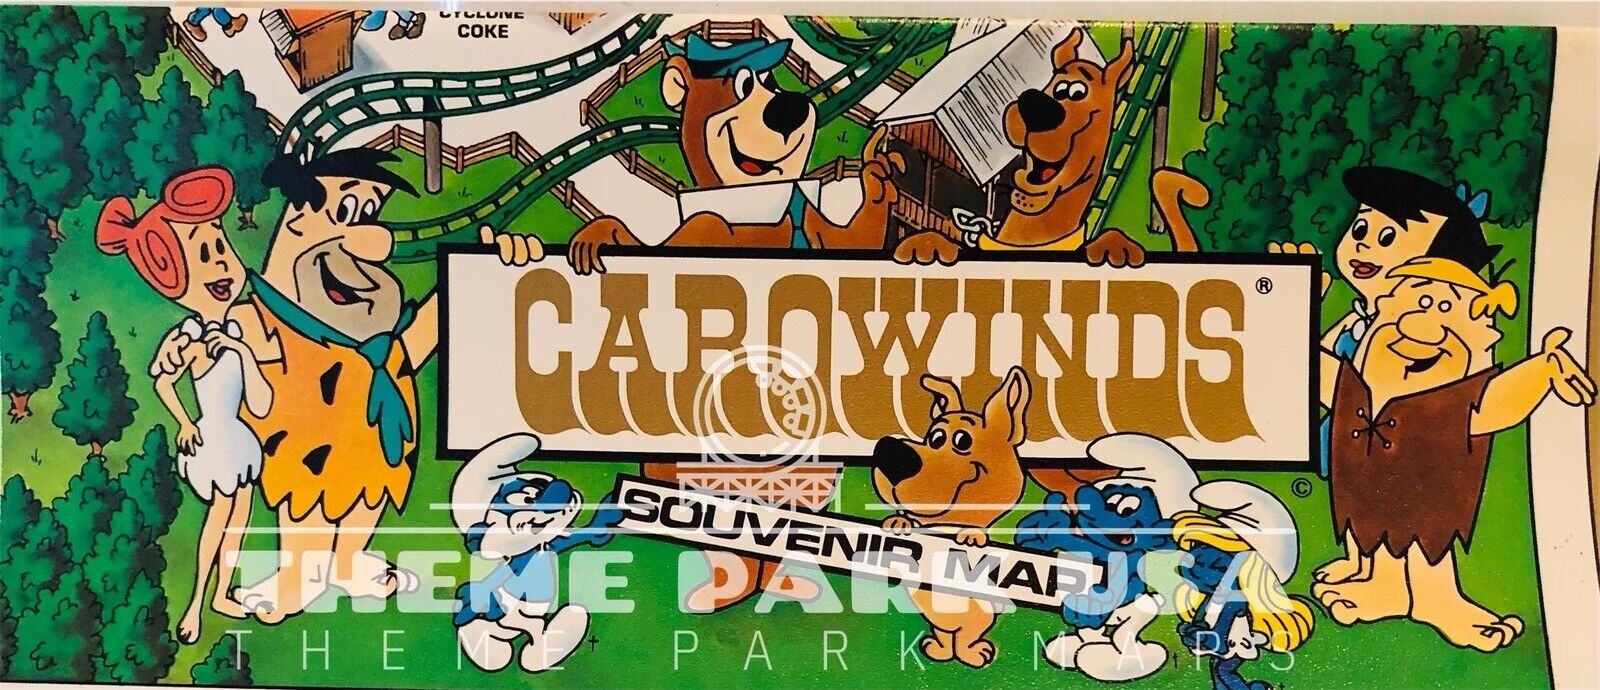 1989 CAROWINDS Vintage Amusement Theme Park Souvenir Map Charlotte NC Cyclone